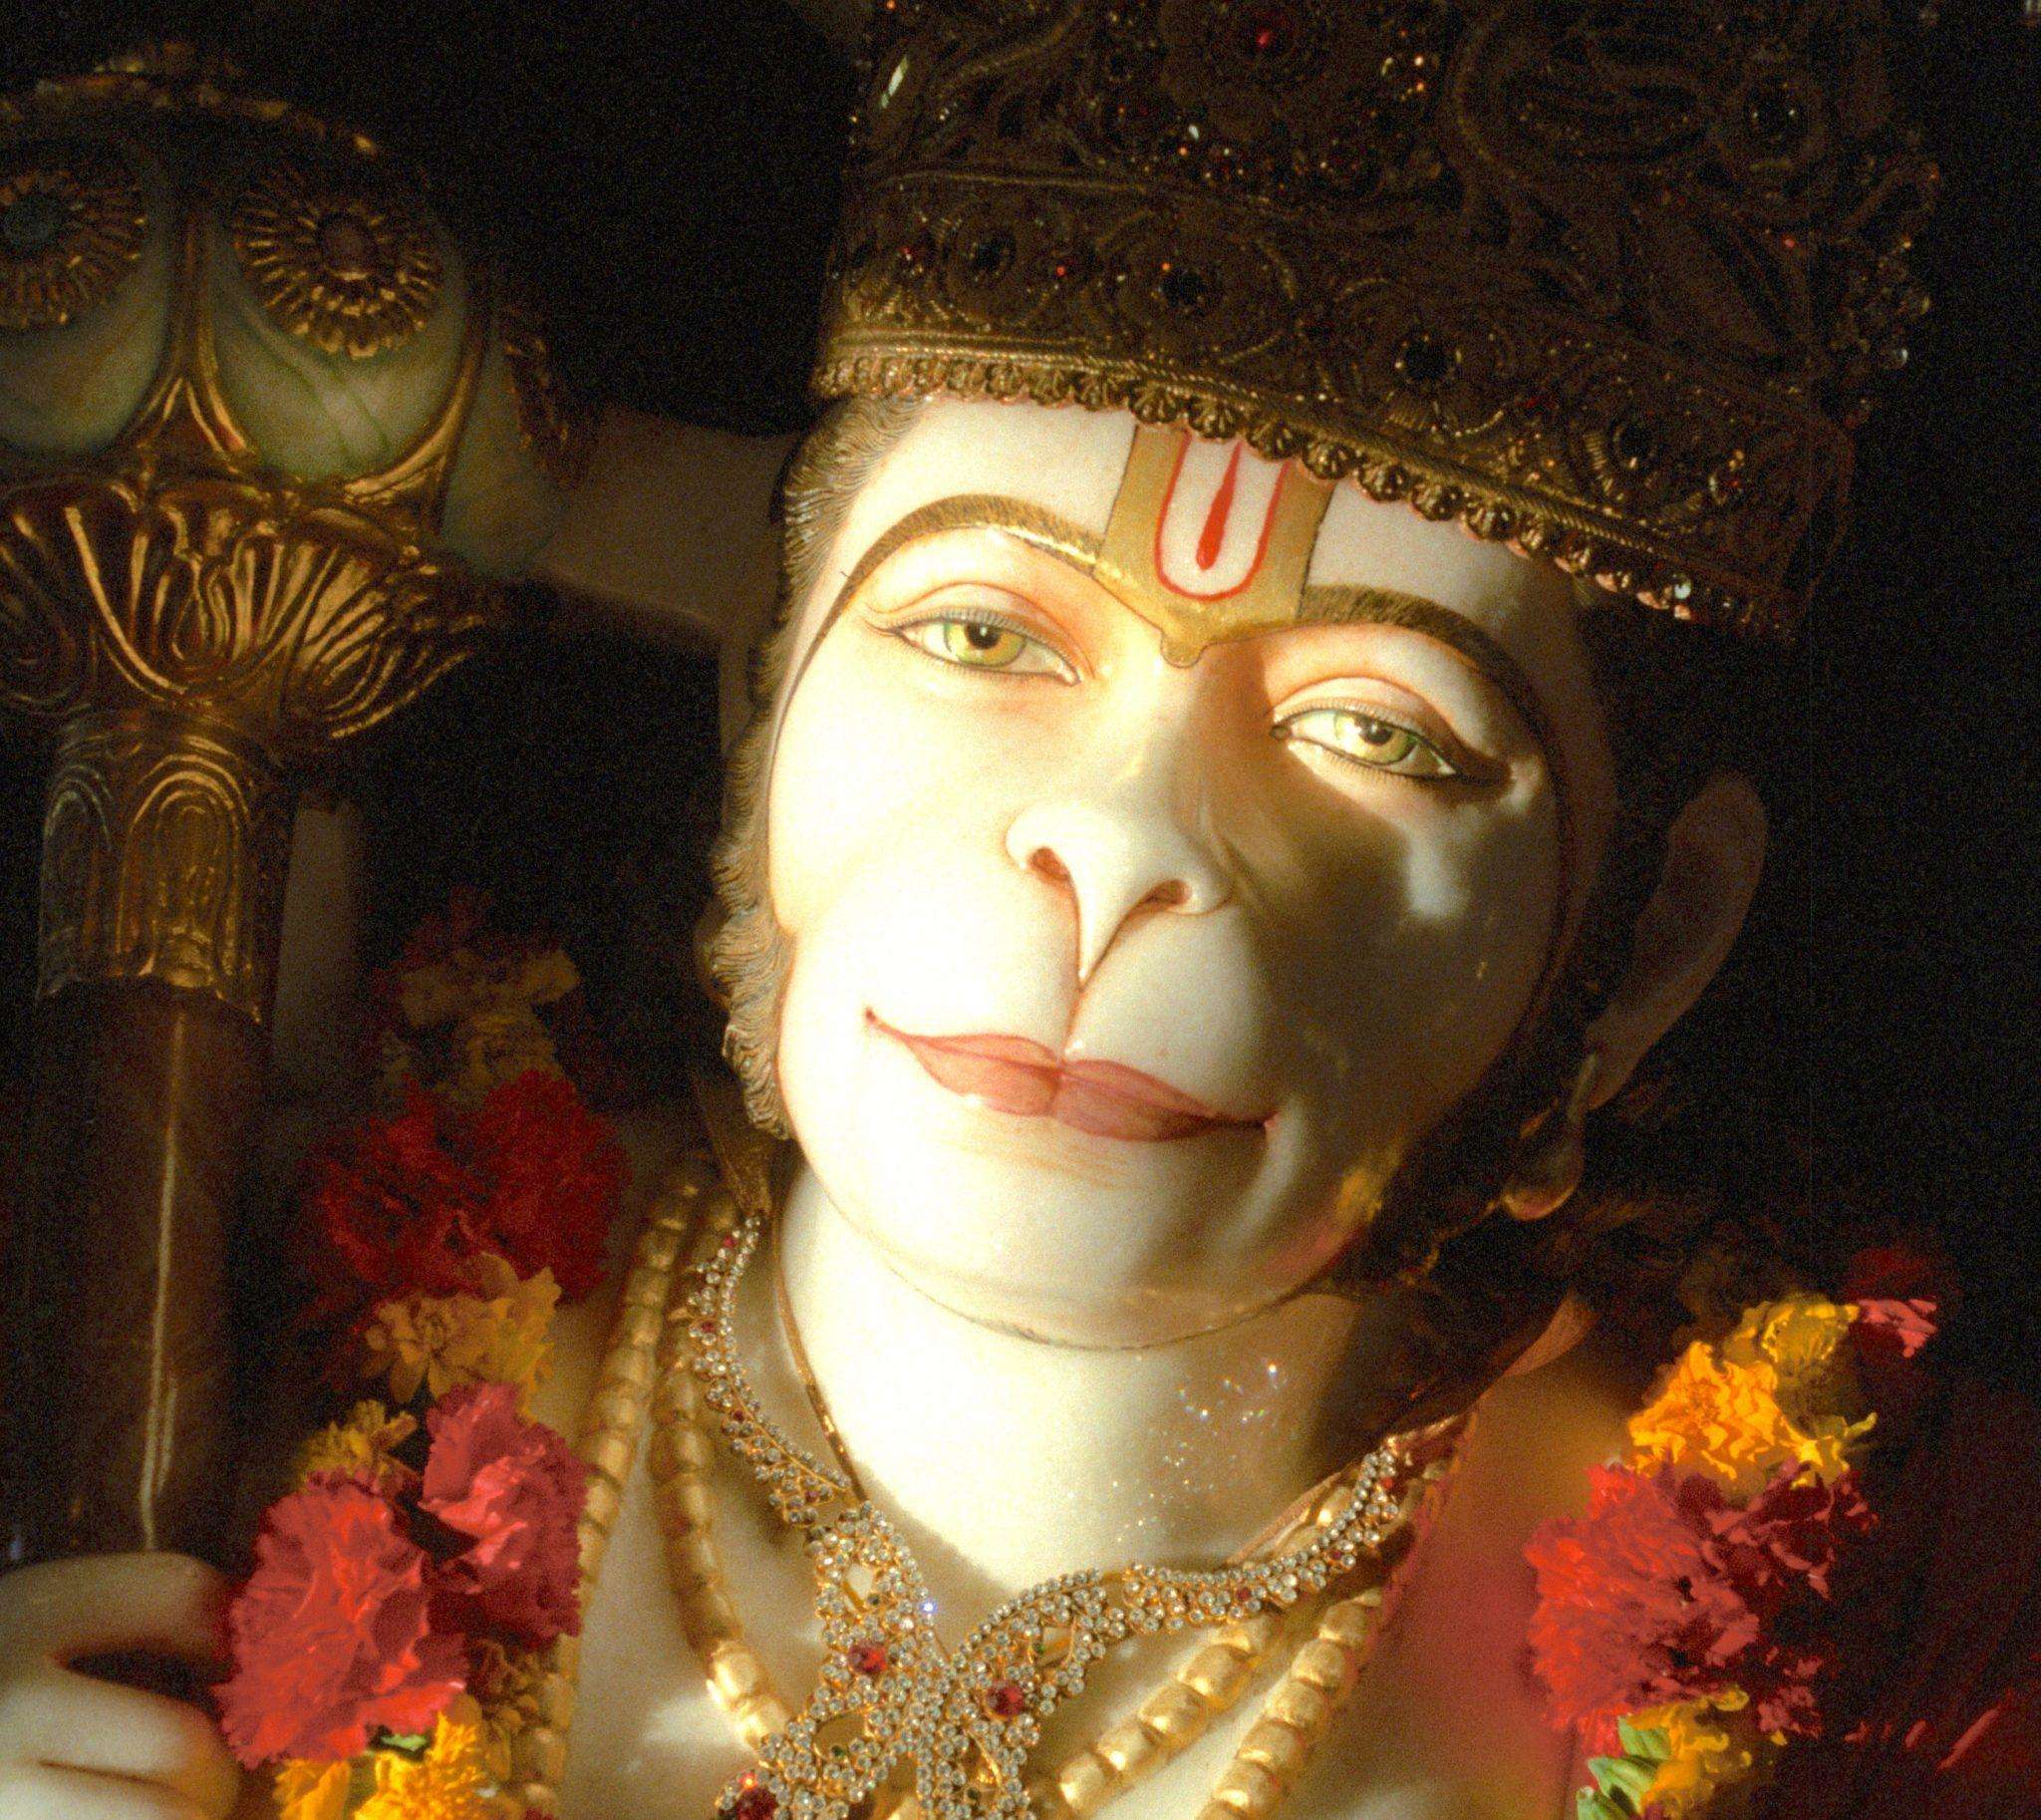 Hanuman chalisa path: हनुमान चालीसा का पाठ करने से दूर होते हैं नकारात्मक विचार, आत्मविश्वास में होती है वृद्धि